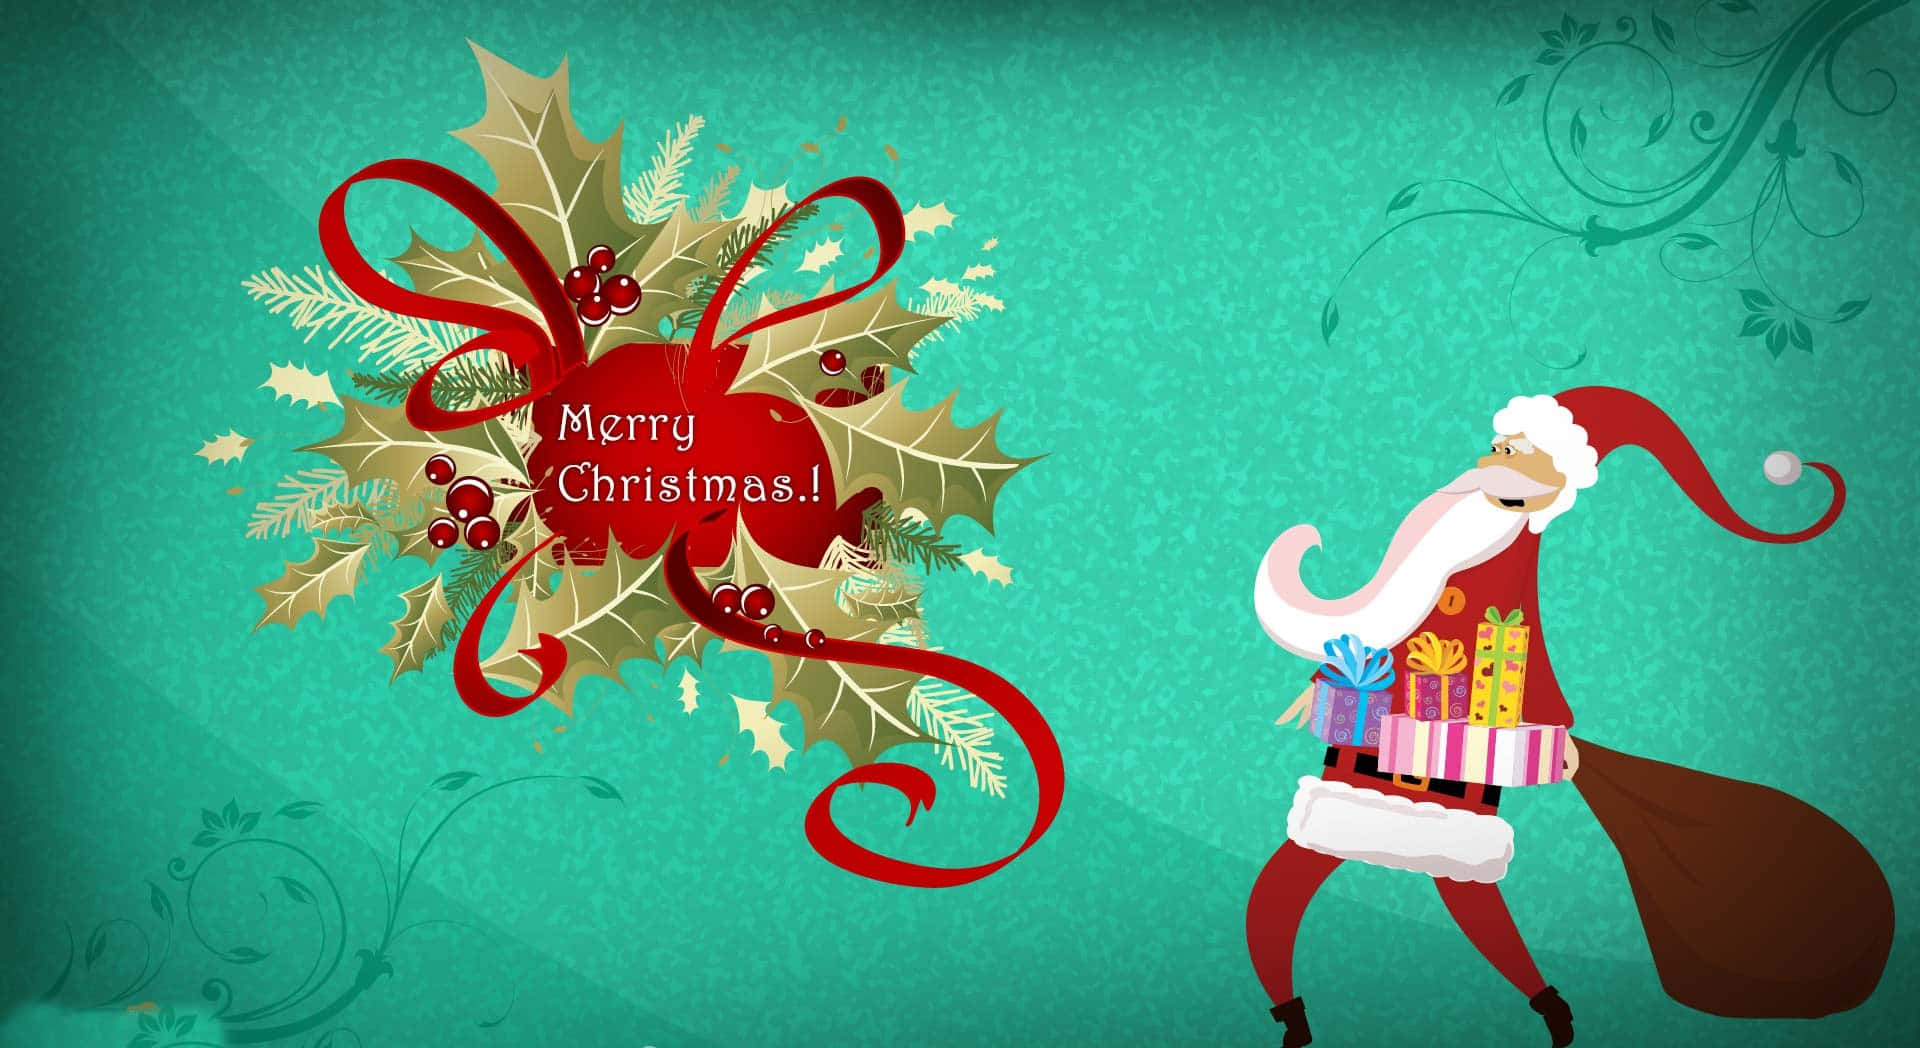 Divertidosfondos De Pantalla De Navidad Para Zoom Con Santa Claus ¡felicitaciones En Estas Vacaciones!